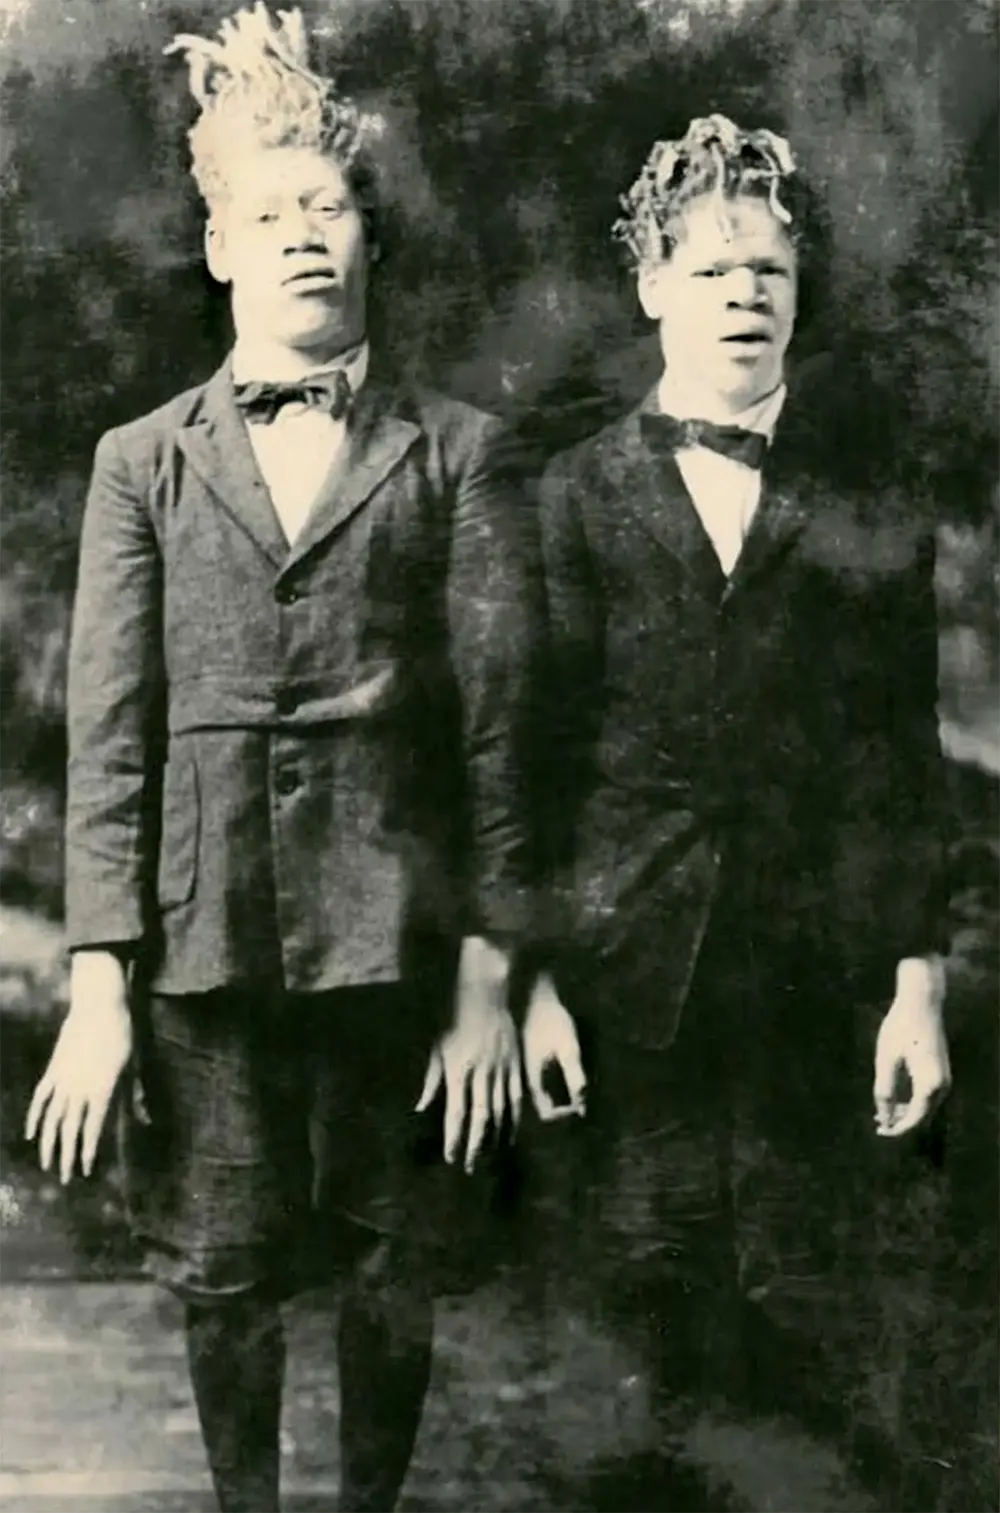 Джордж и Вилли Мьюз на самой ранней известной фотографии в цирке